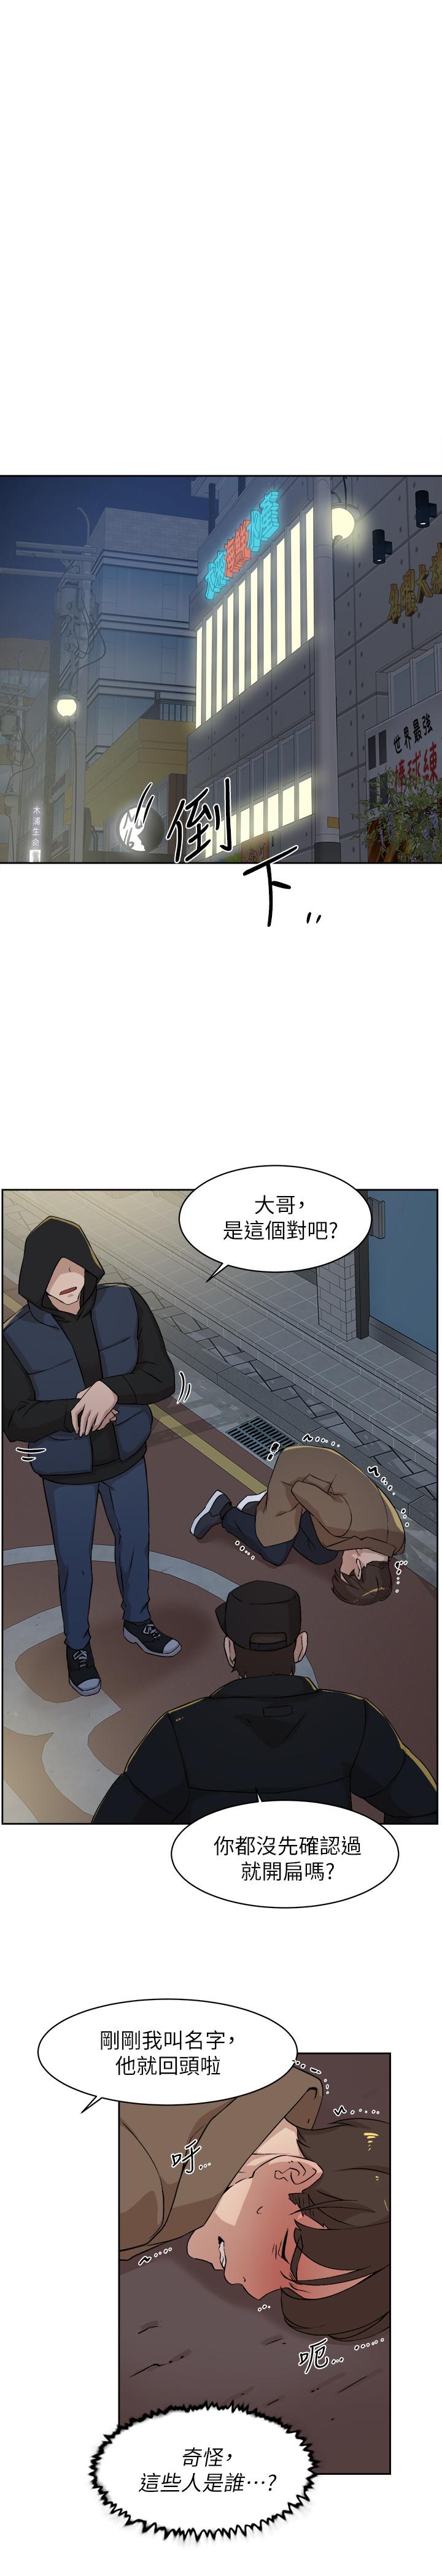 韩国污漫画 她的高跟鞋(無刪減) 第127话-偷偷探望真宇 11